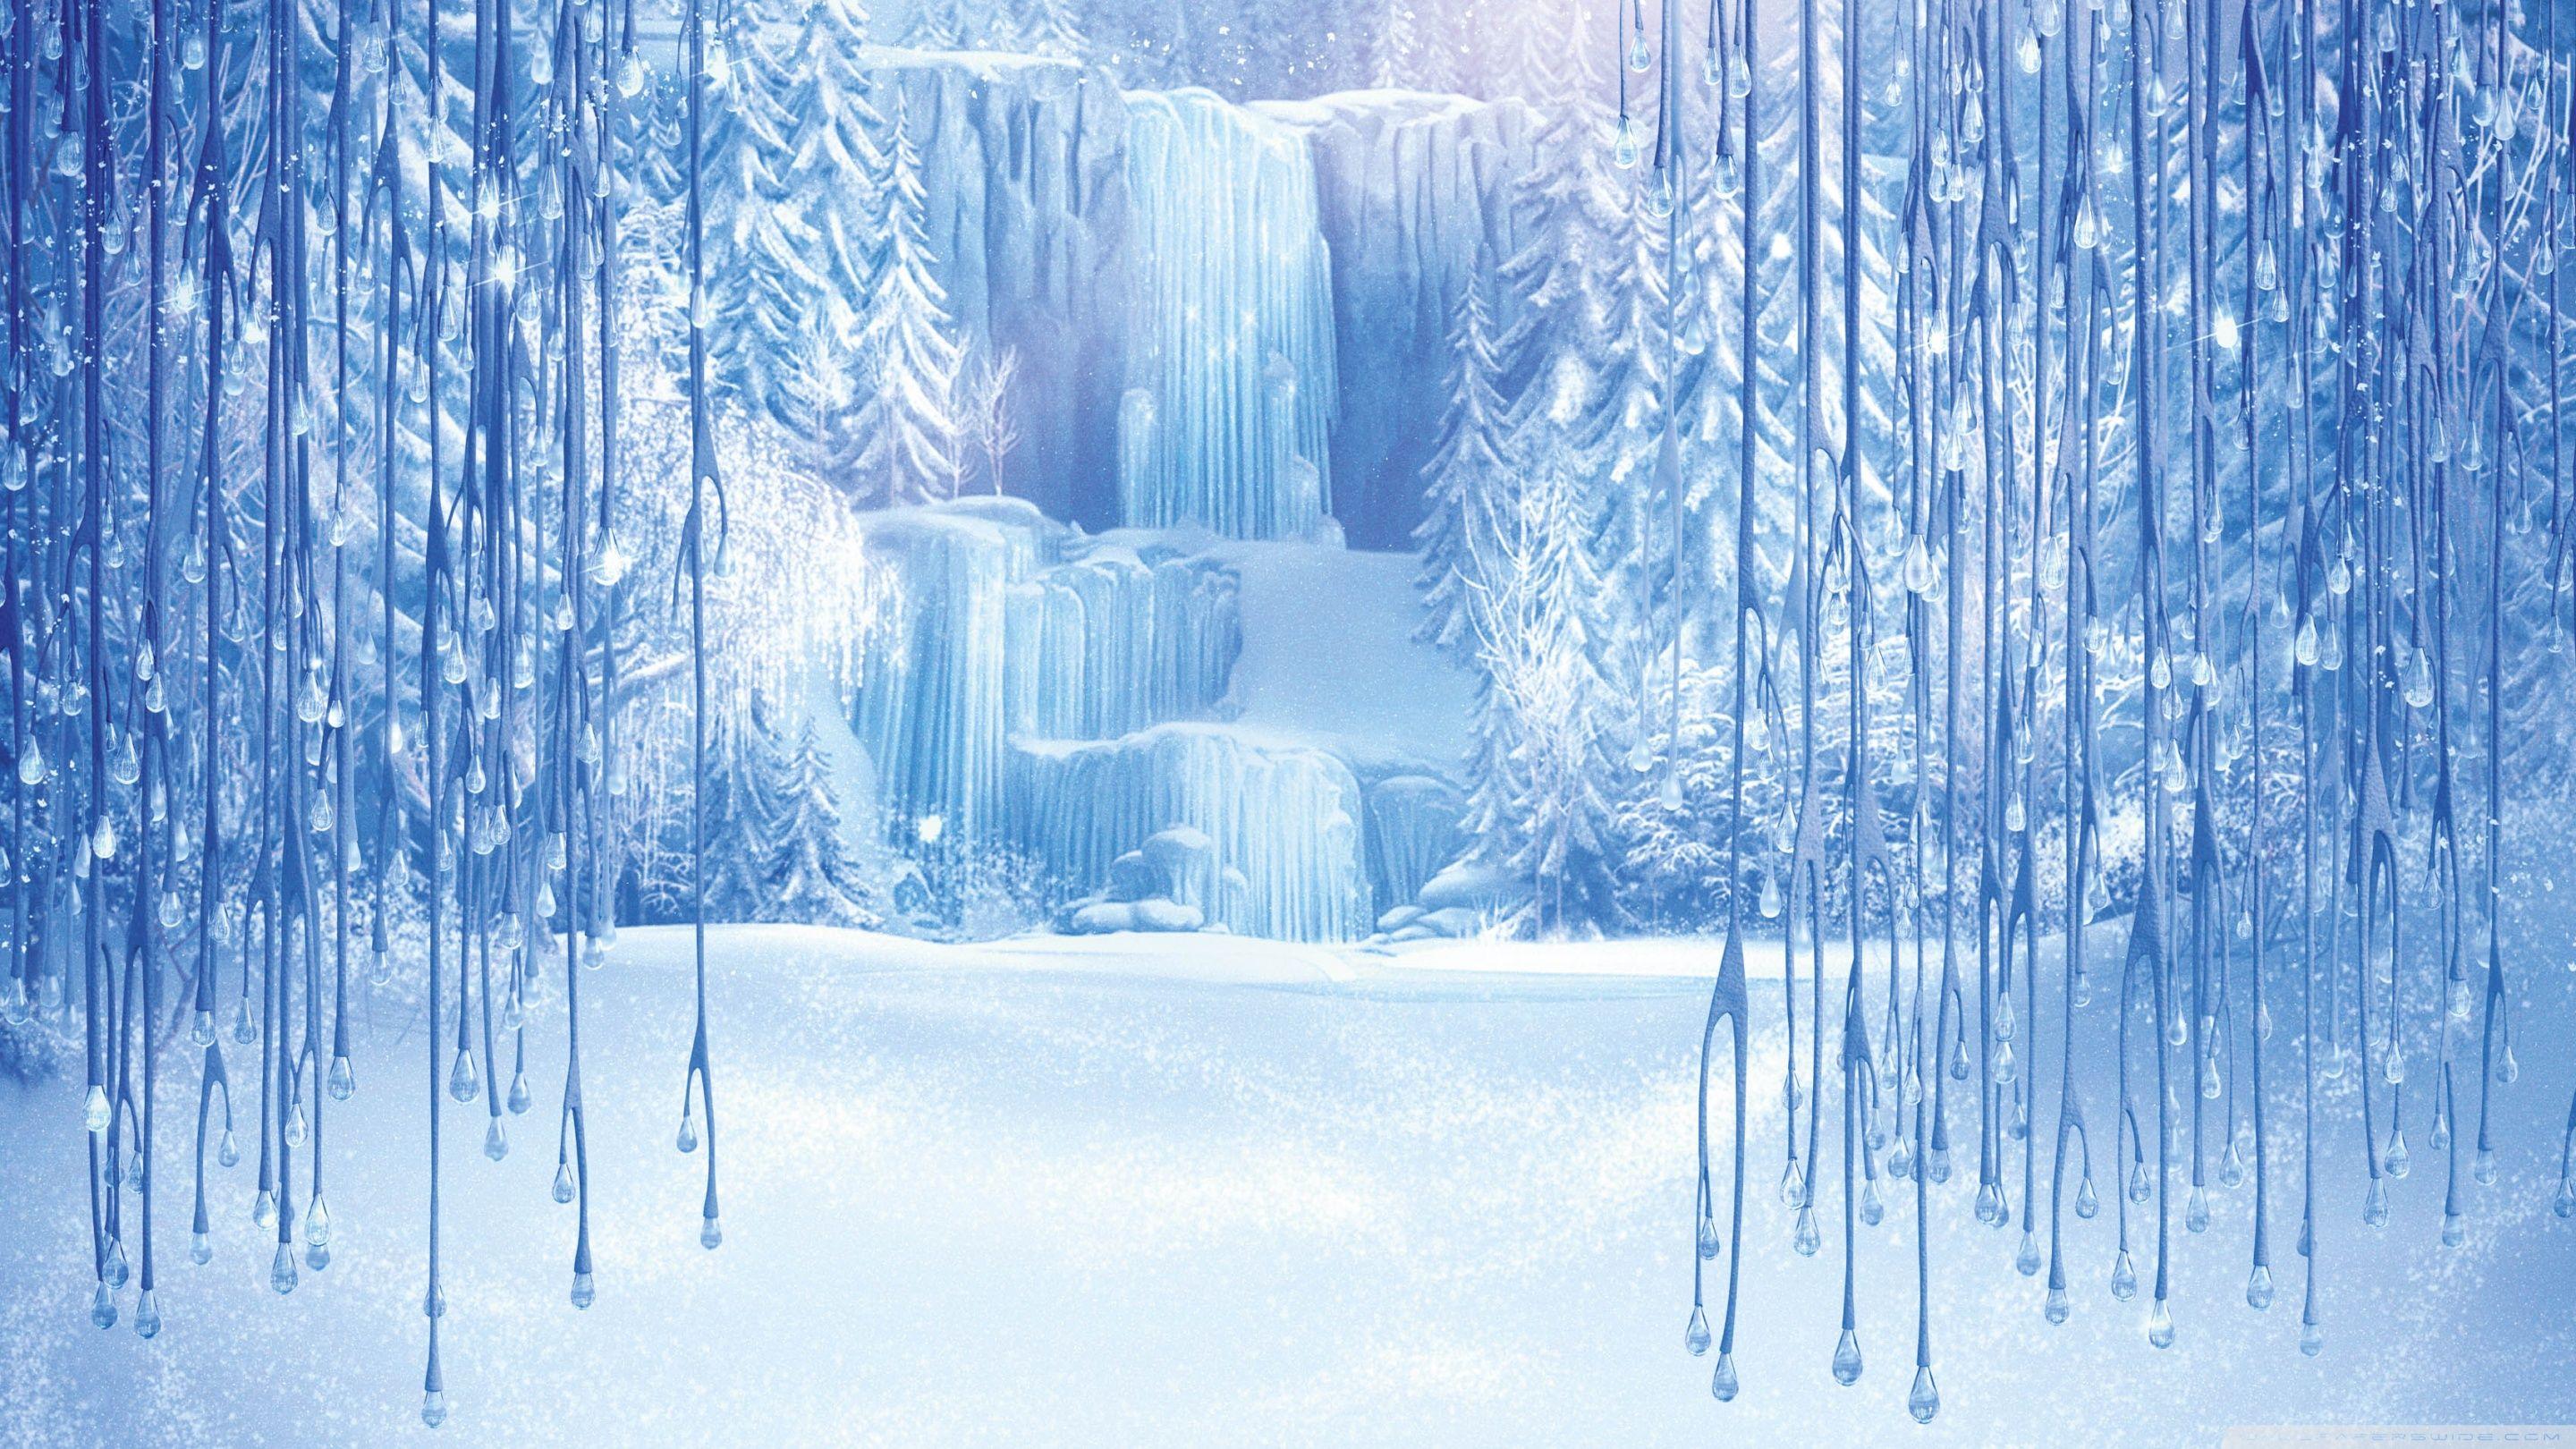 Frozen HD Wallpaper Background Wallpaper. Frozen backdrop